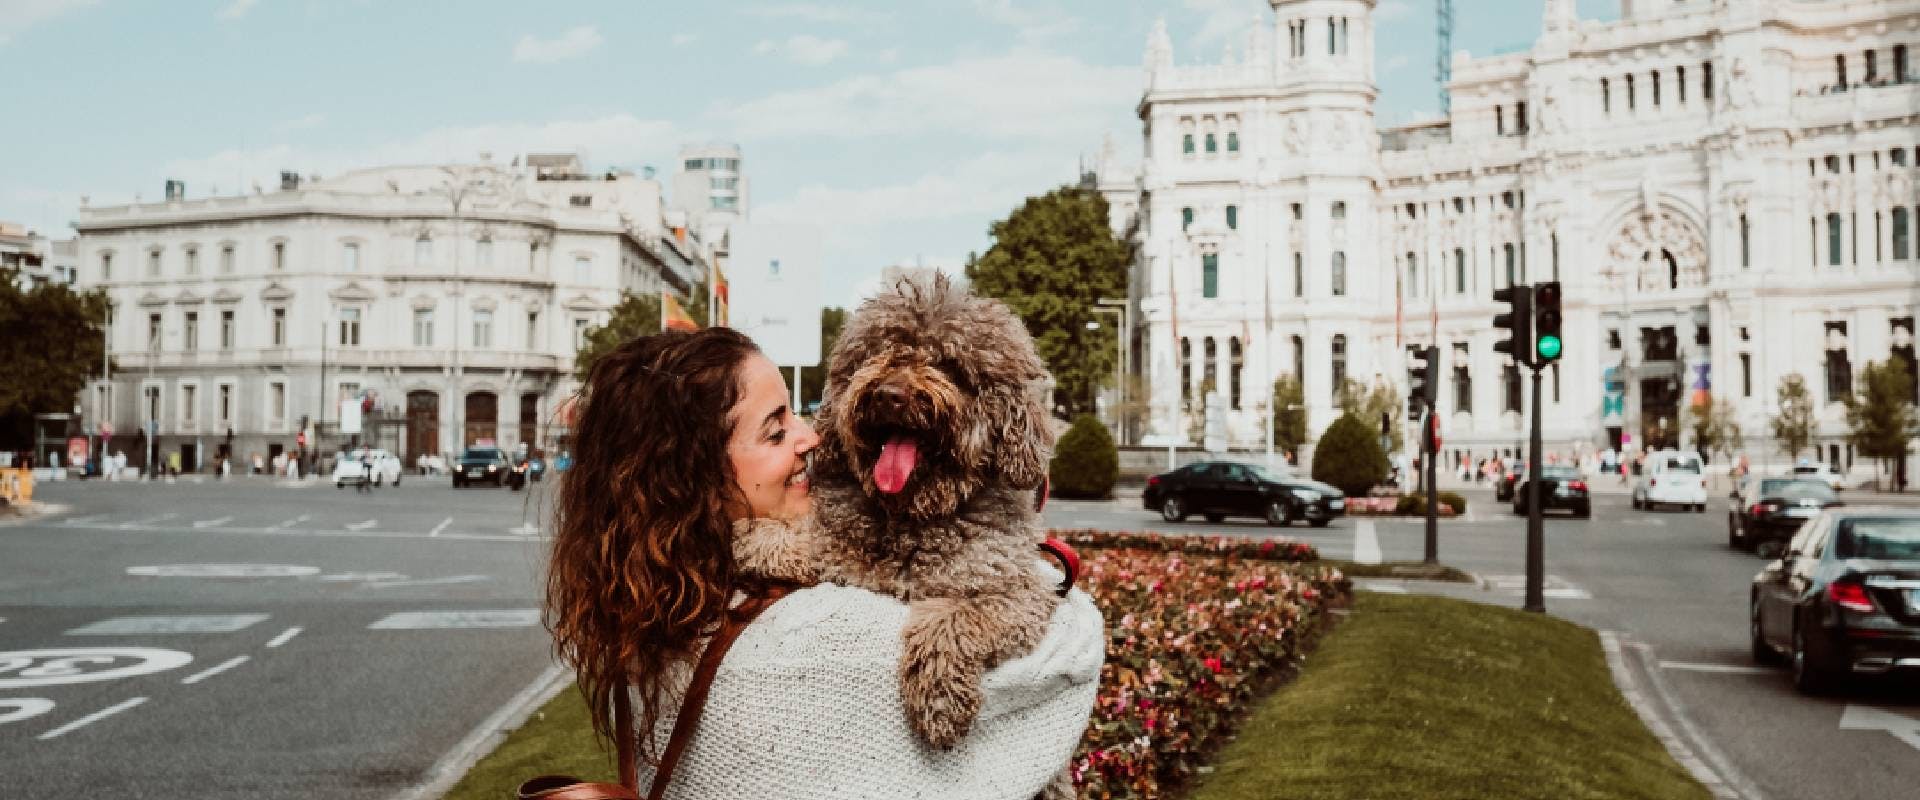 Woman cuddling a dog in Madrid